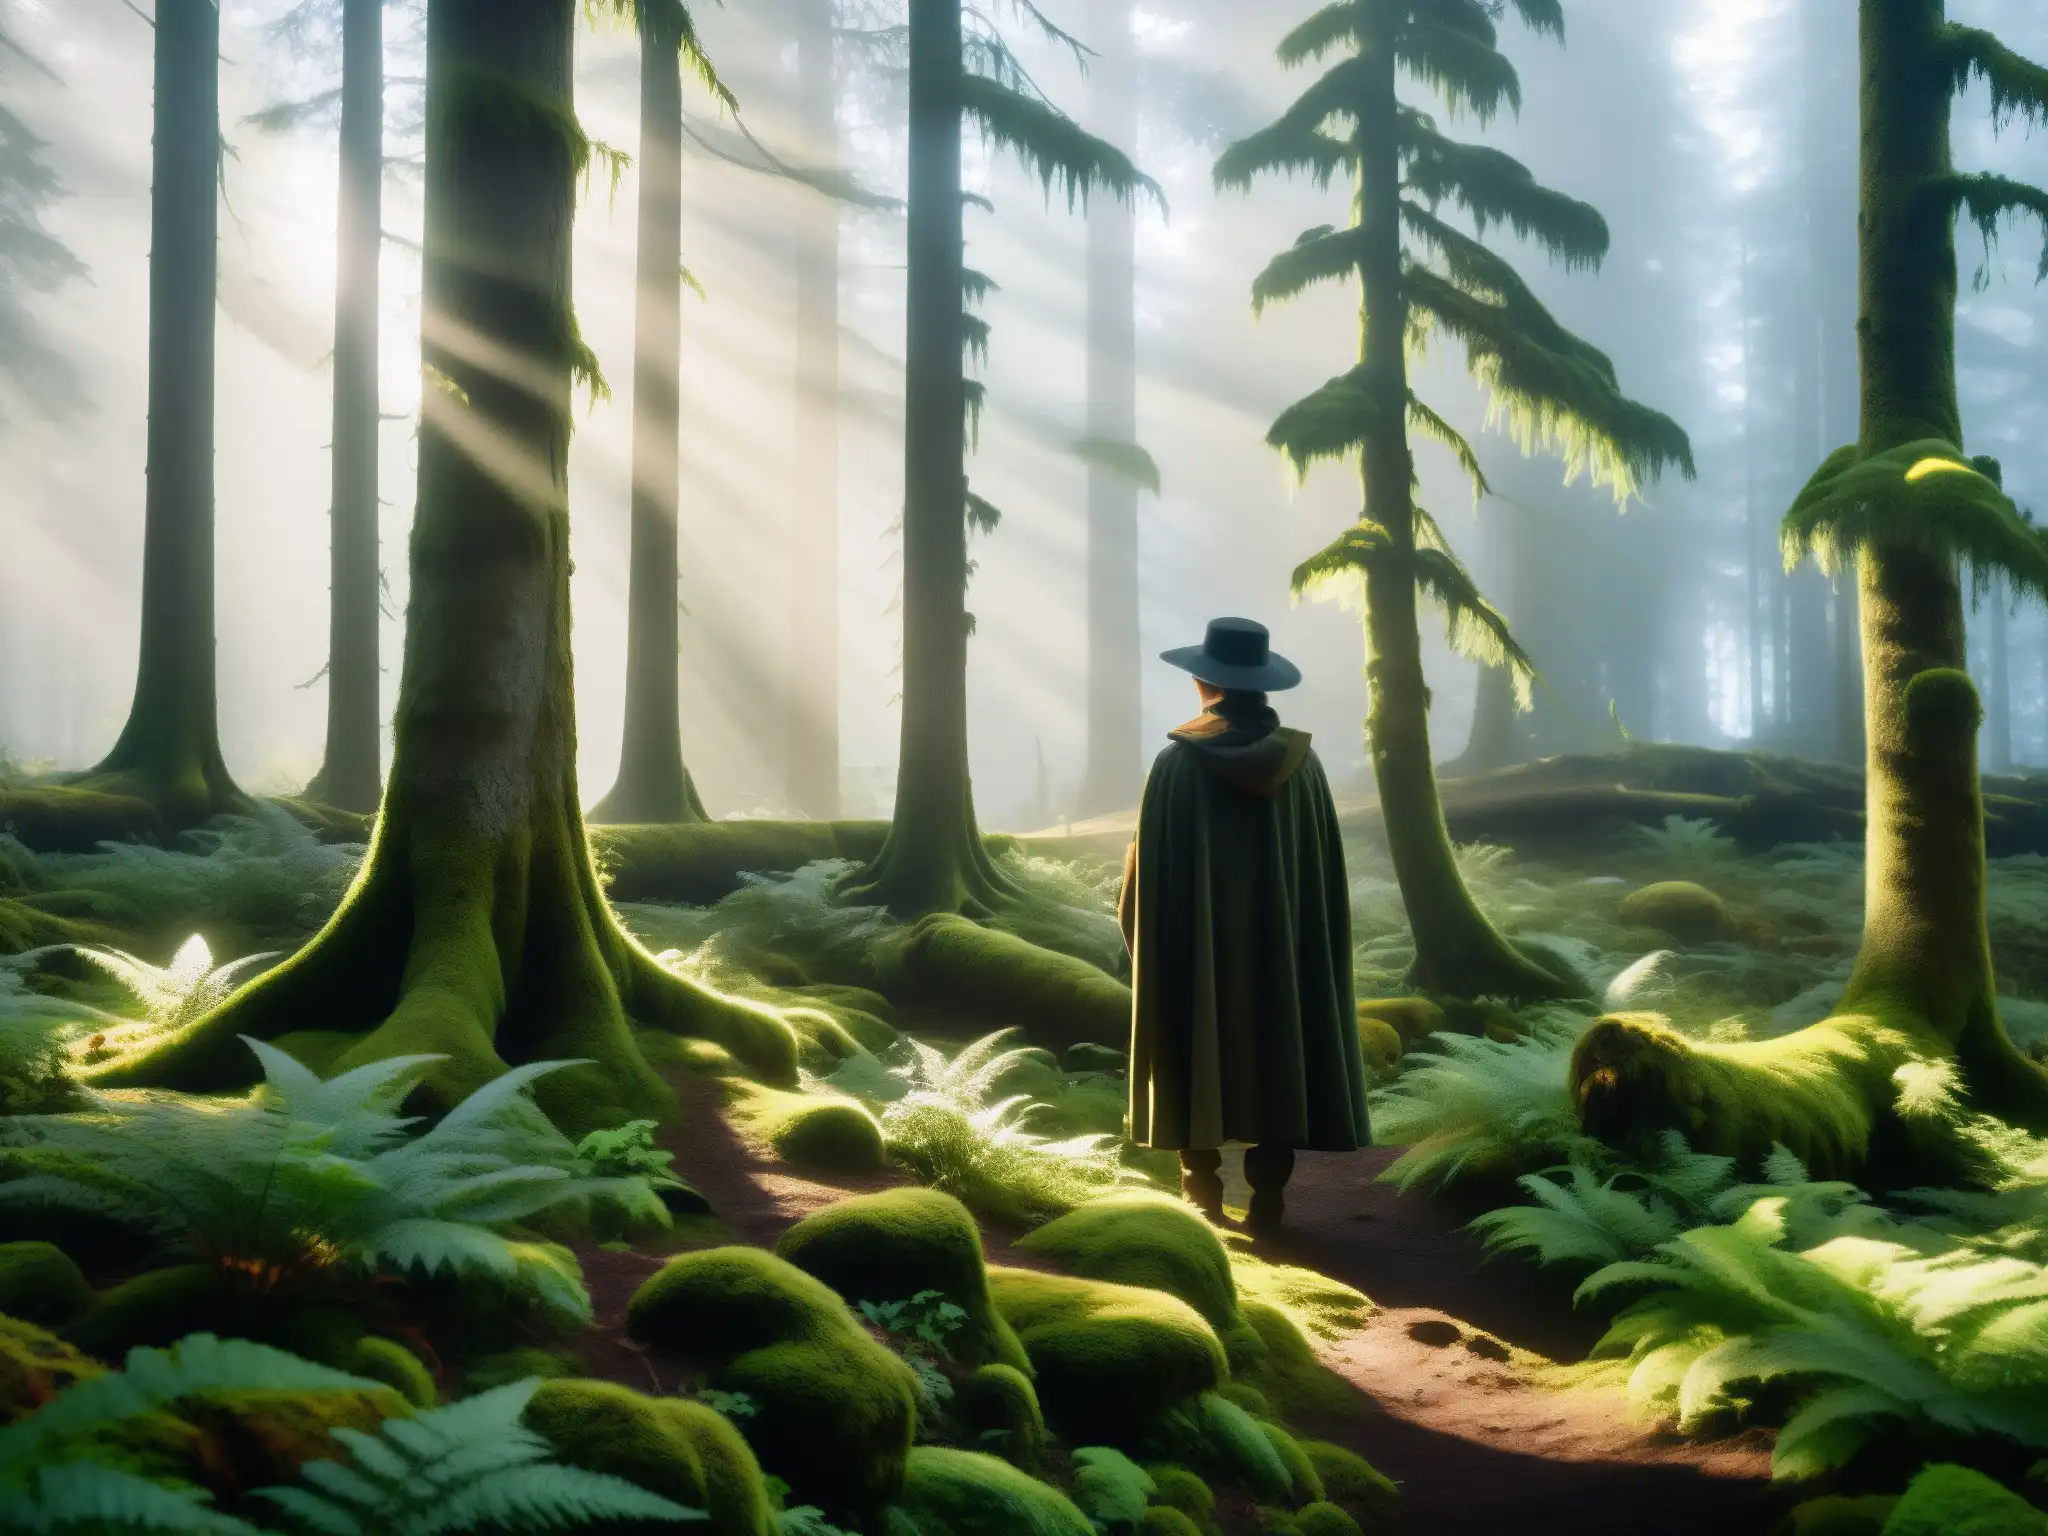 Misterioso Hombre del Bosque Sueco entre árboles antiguos, musgo y neblina, creando un aura de misterio